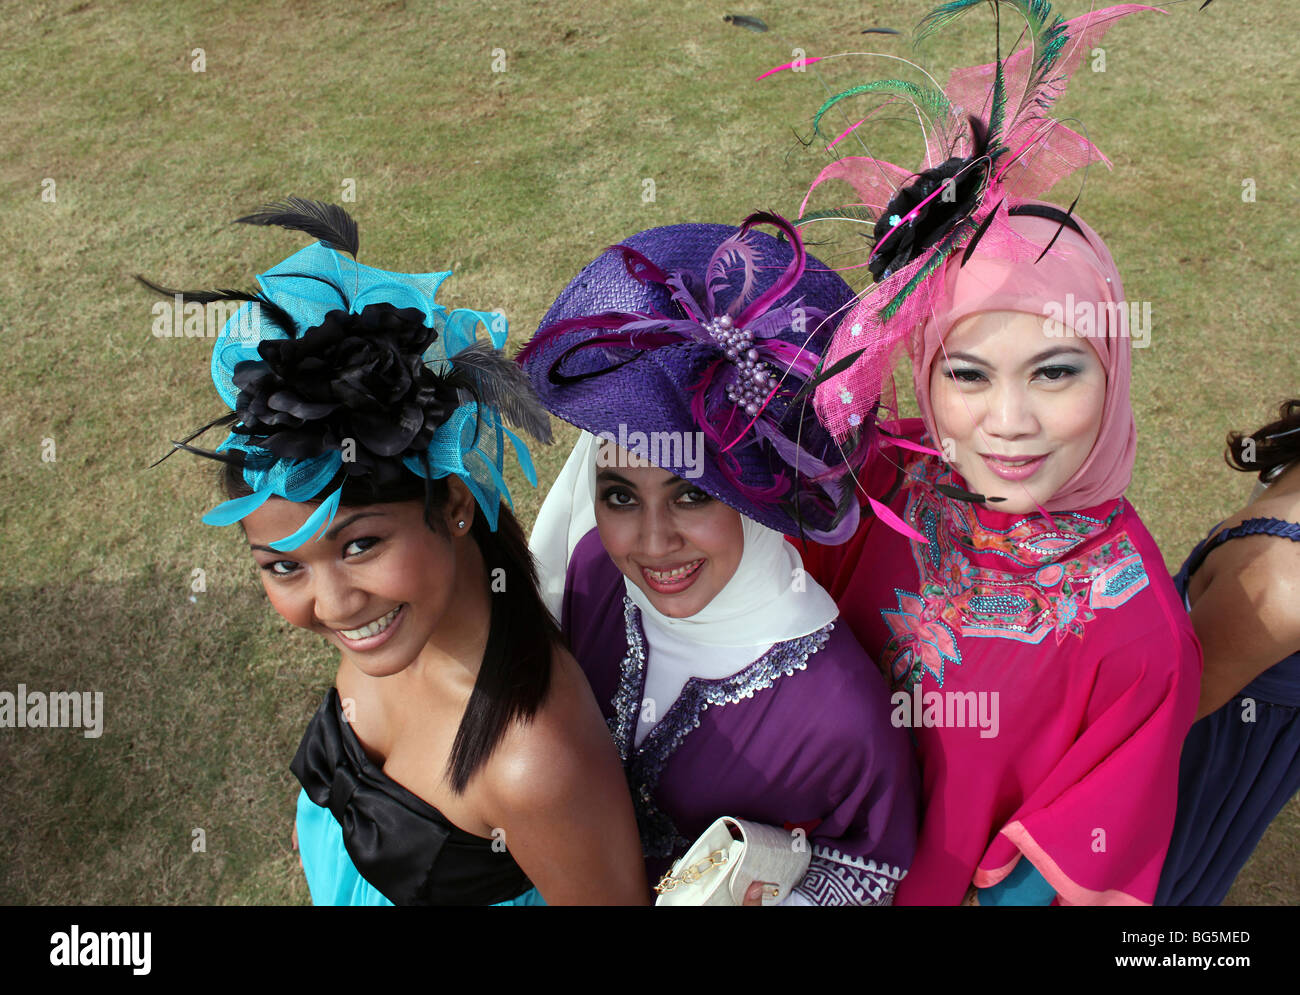 Elegant gekleidete Frauen Hüte zu tragen, während ein Pferderennen, Dubai, Vereinigte Arabische Emirate Stockfoto